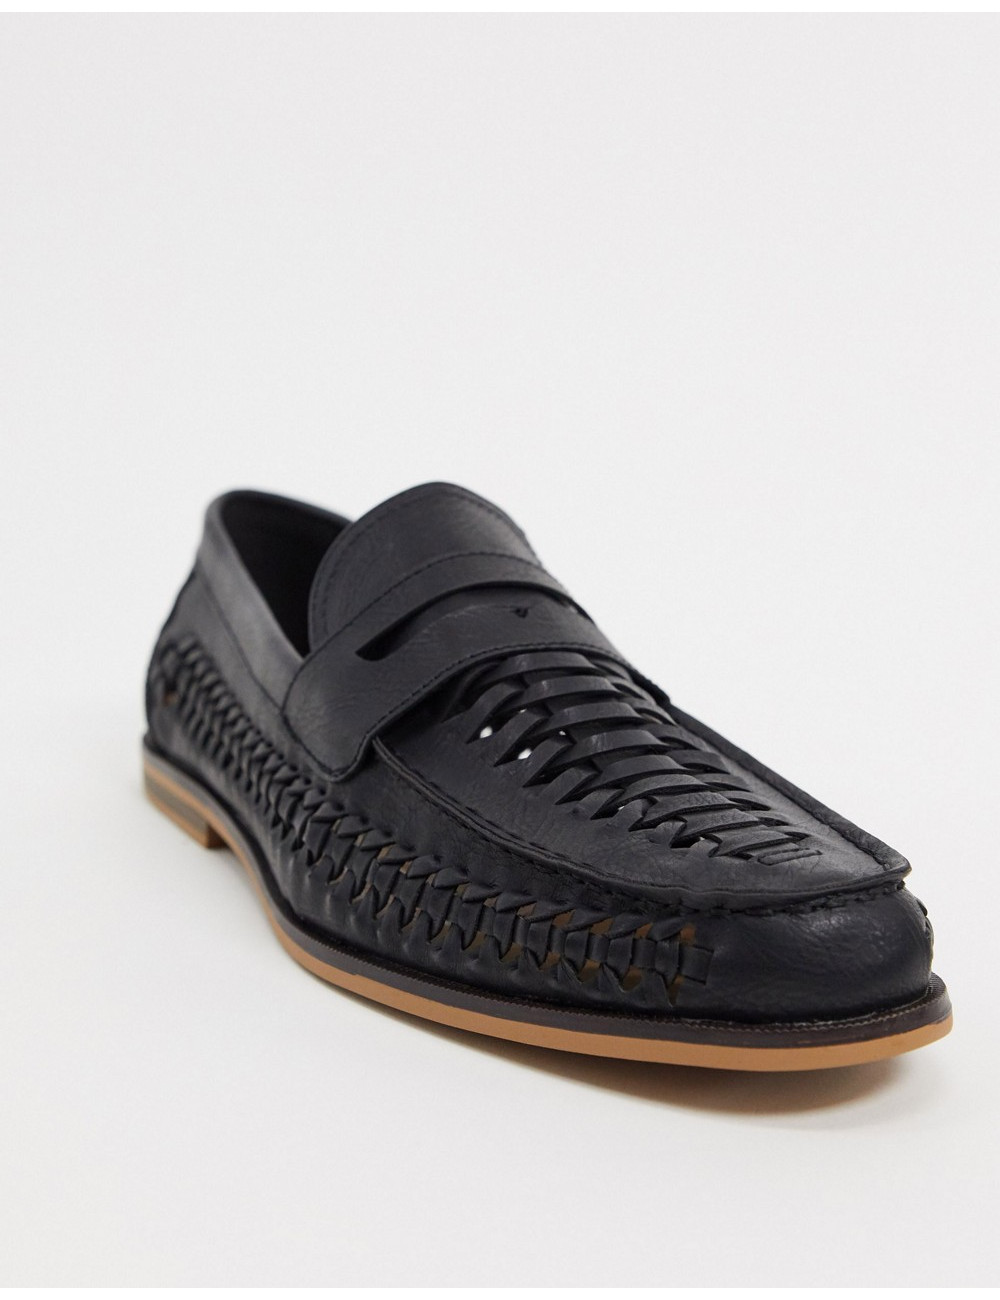 Topman woven loafers in black